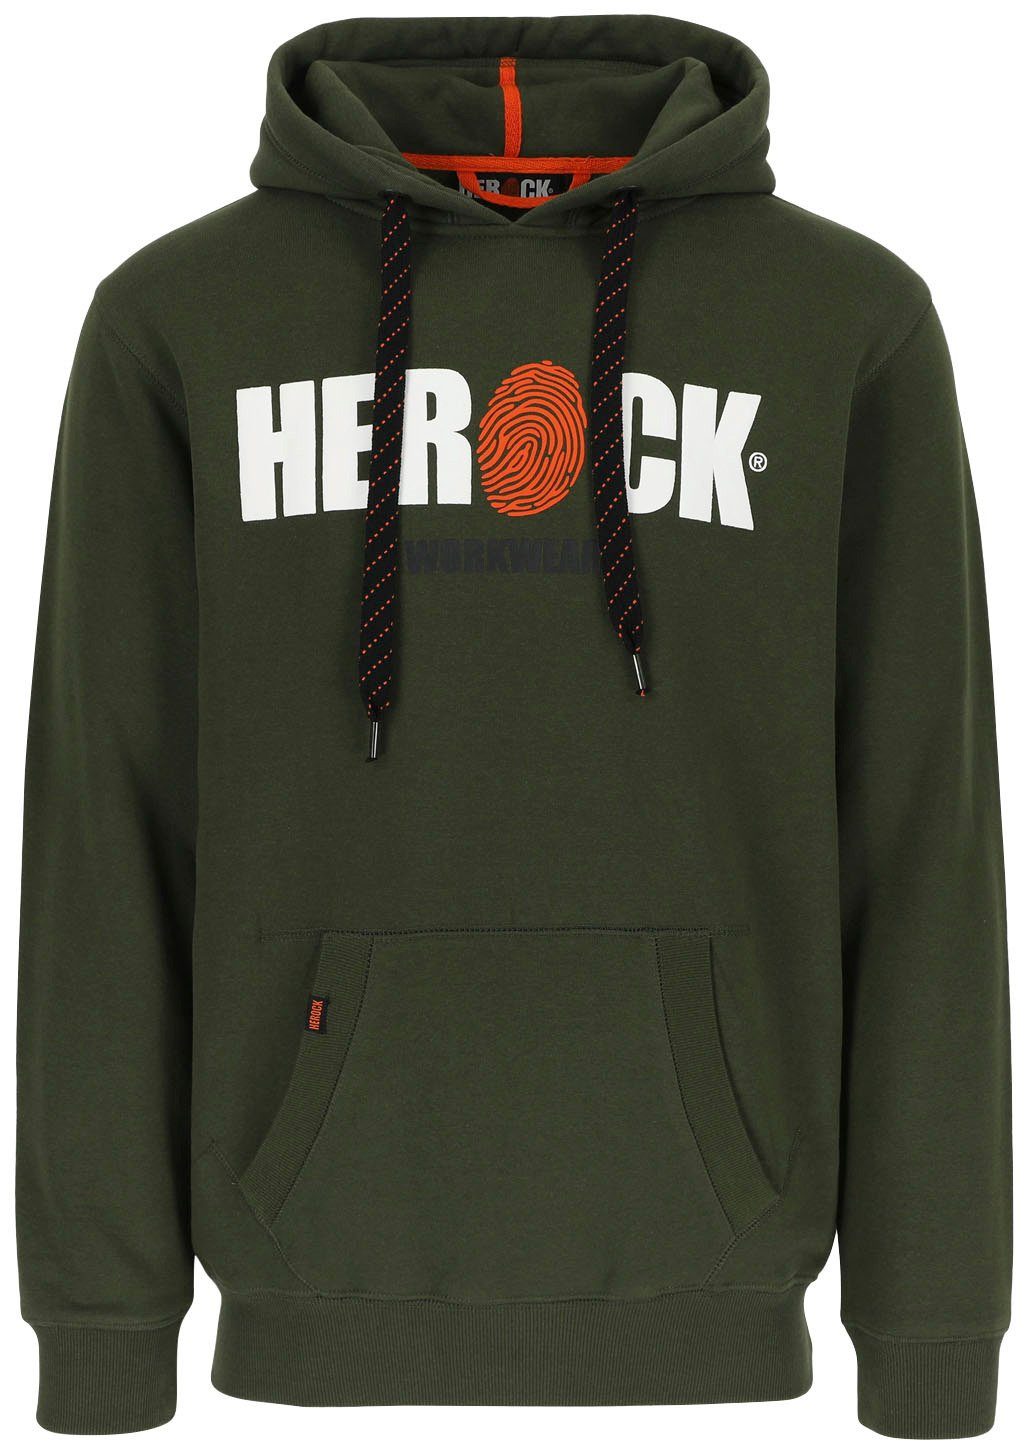 angenehm weich Kangurutasche, sehr Mit HERO und Herock®-Aufdruck, Hoodie Herock